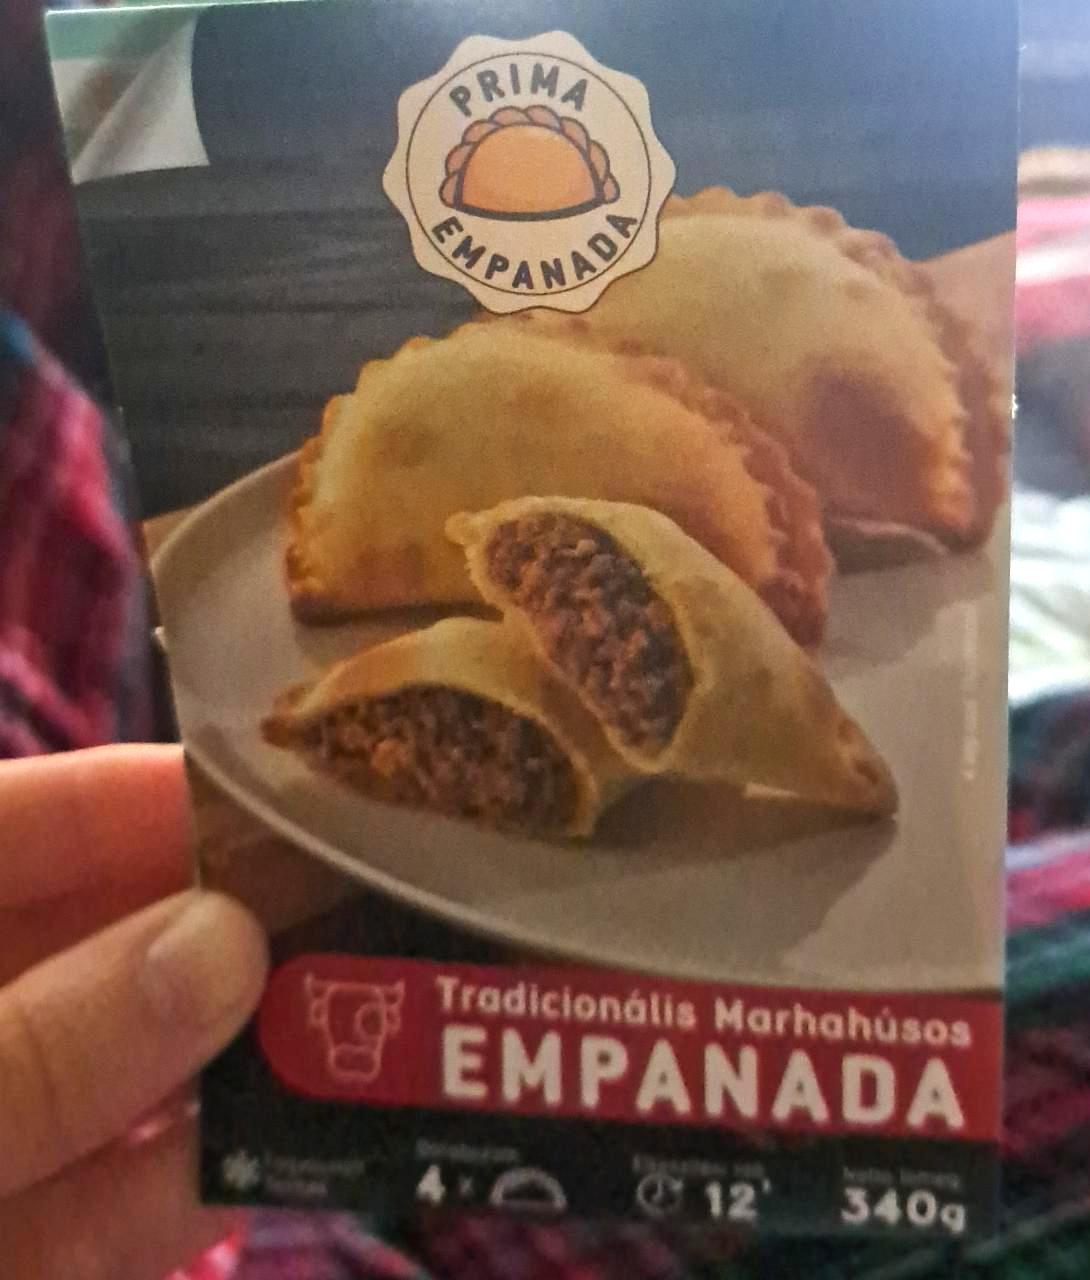 Képek - Tradicionális marhahúsos empanada Prima empanada